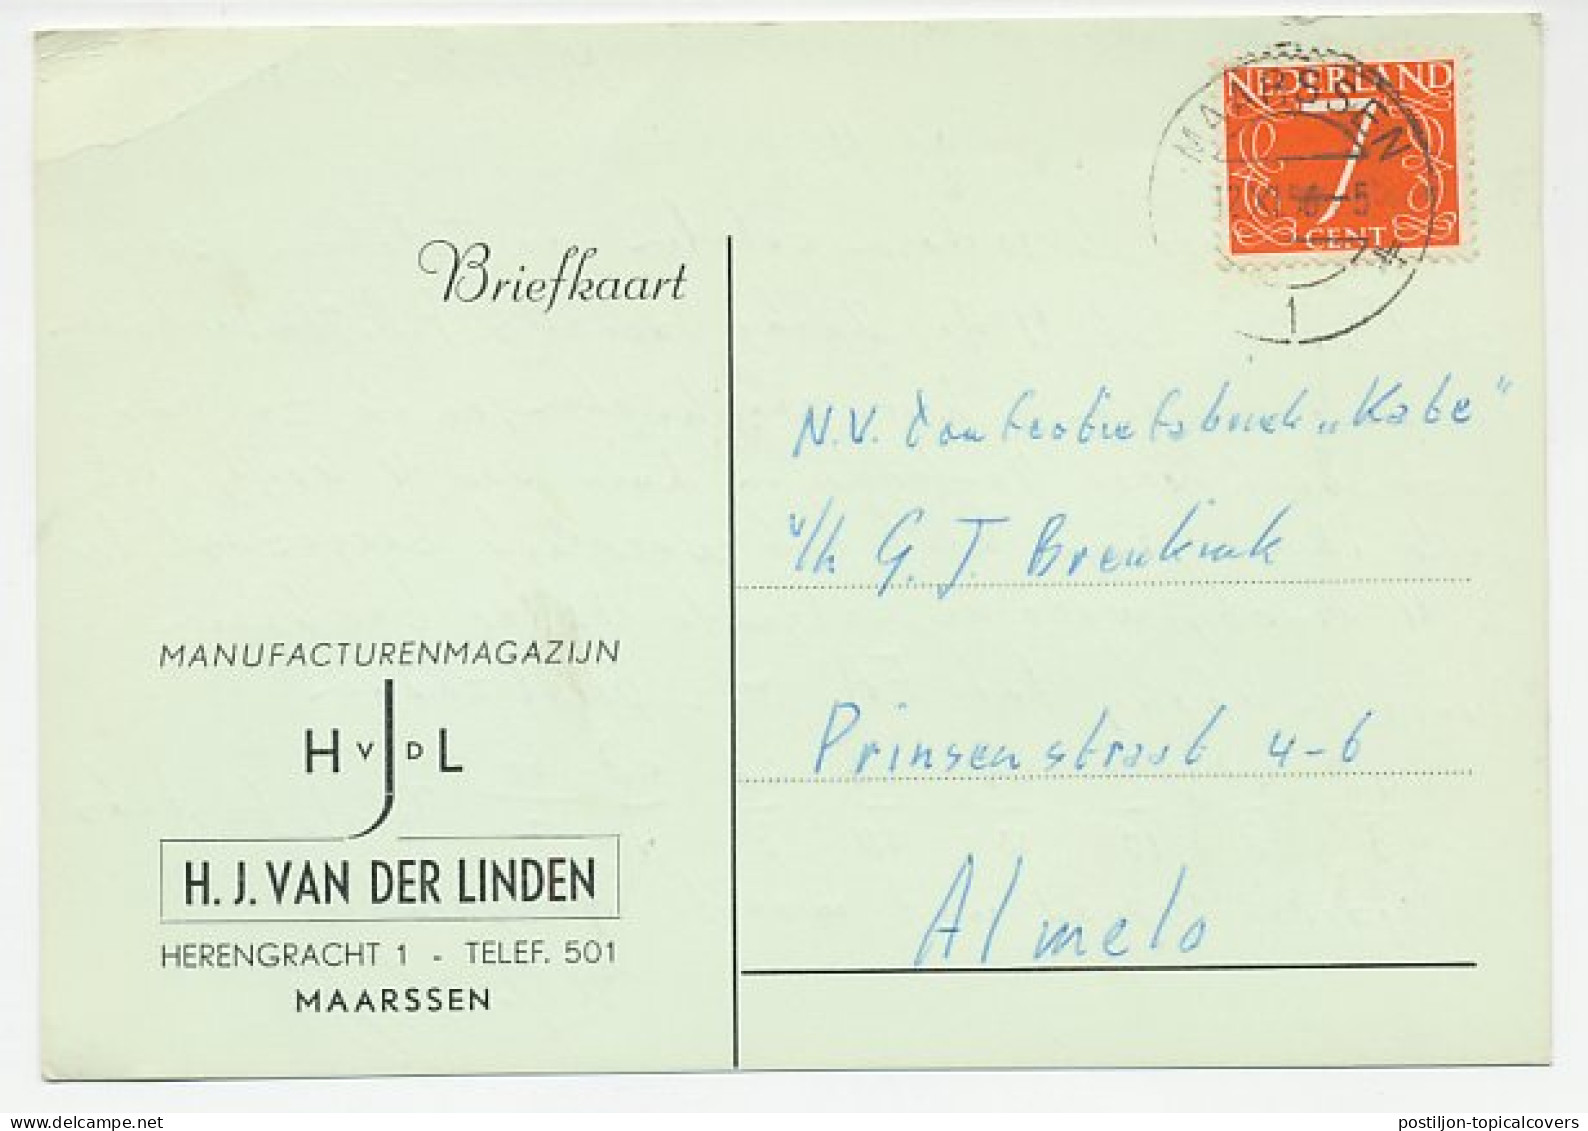 Firma Briefkaart Maarssen 1956 - Manufacturen - Unclassified